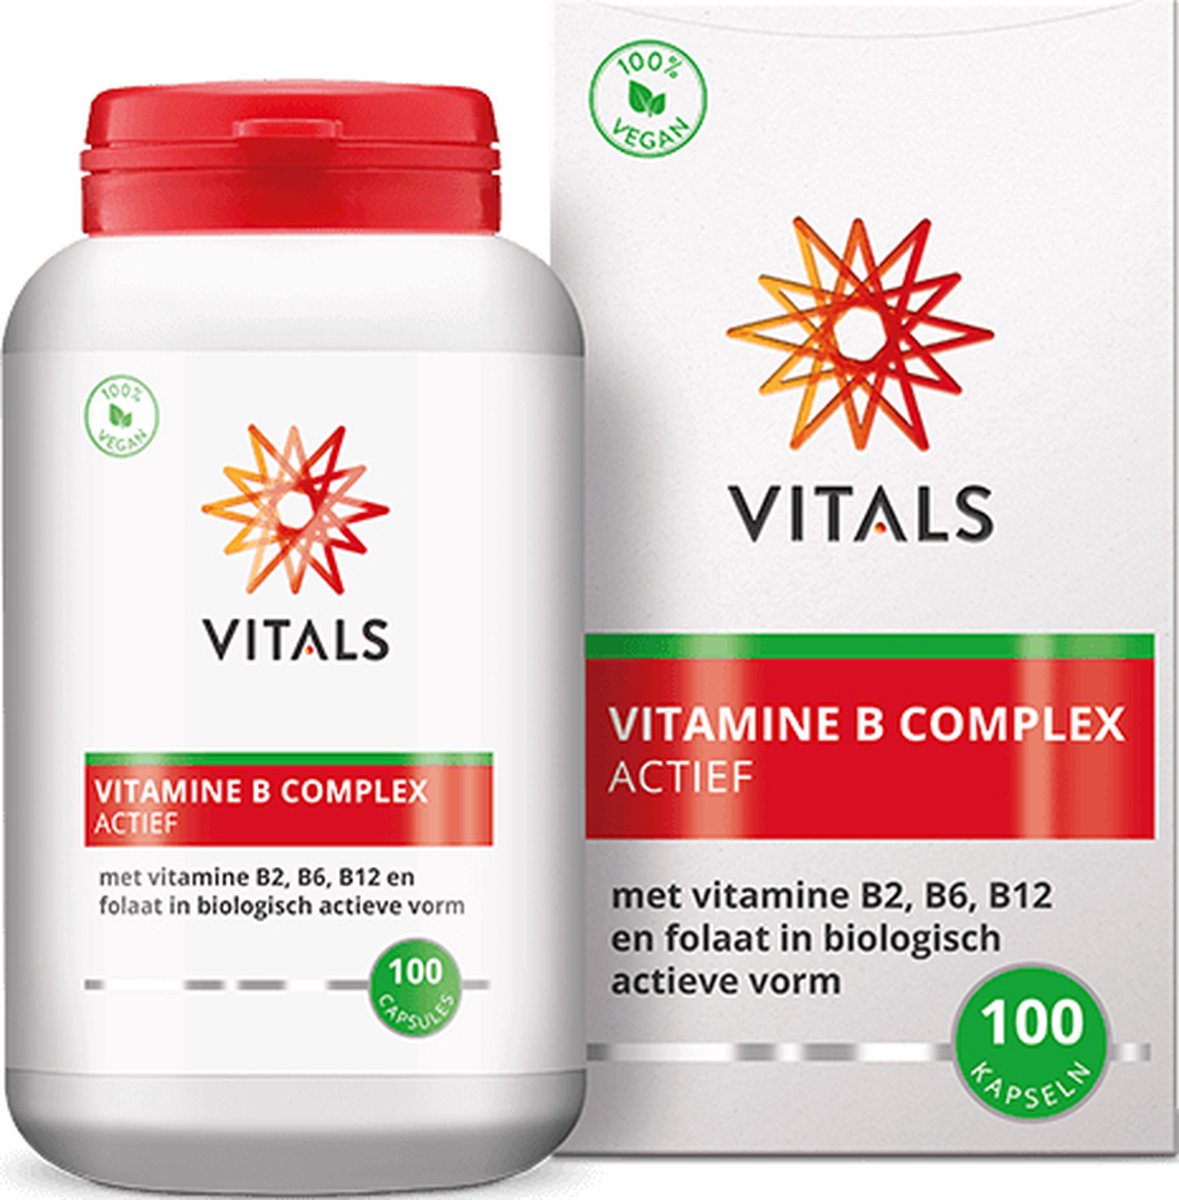 Vitals - Vitamine B complex Actief - 100 Capsules - met de biologisch actieve vormen van B2, B6, B12 en folaat